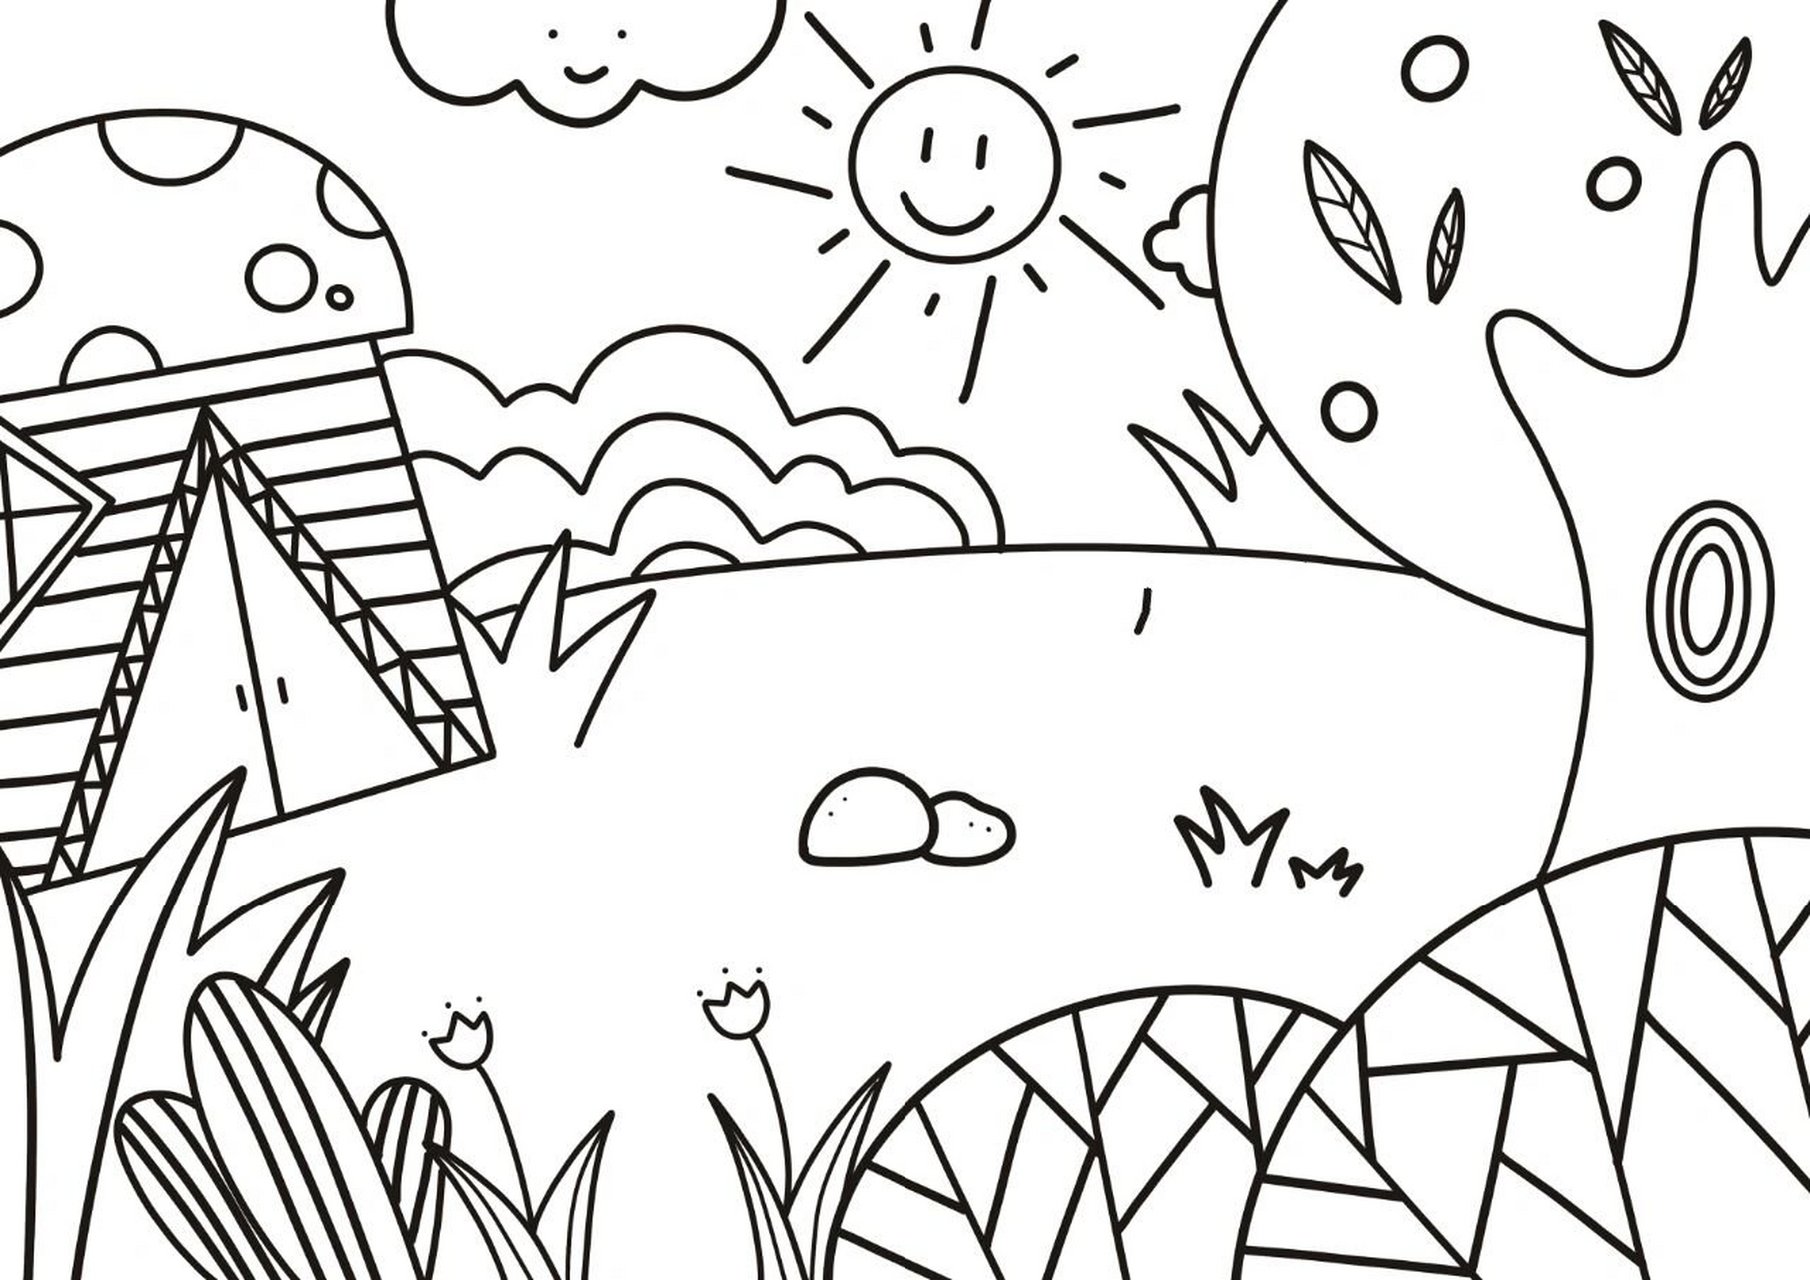 28】万能森林场景素材 万能简笔画素材分享:森林场景素材 幼师简笔画